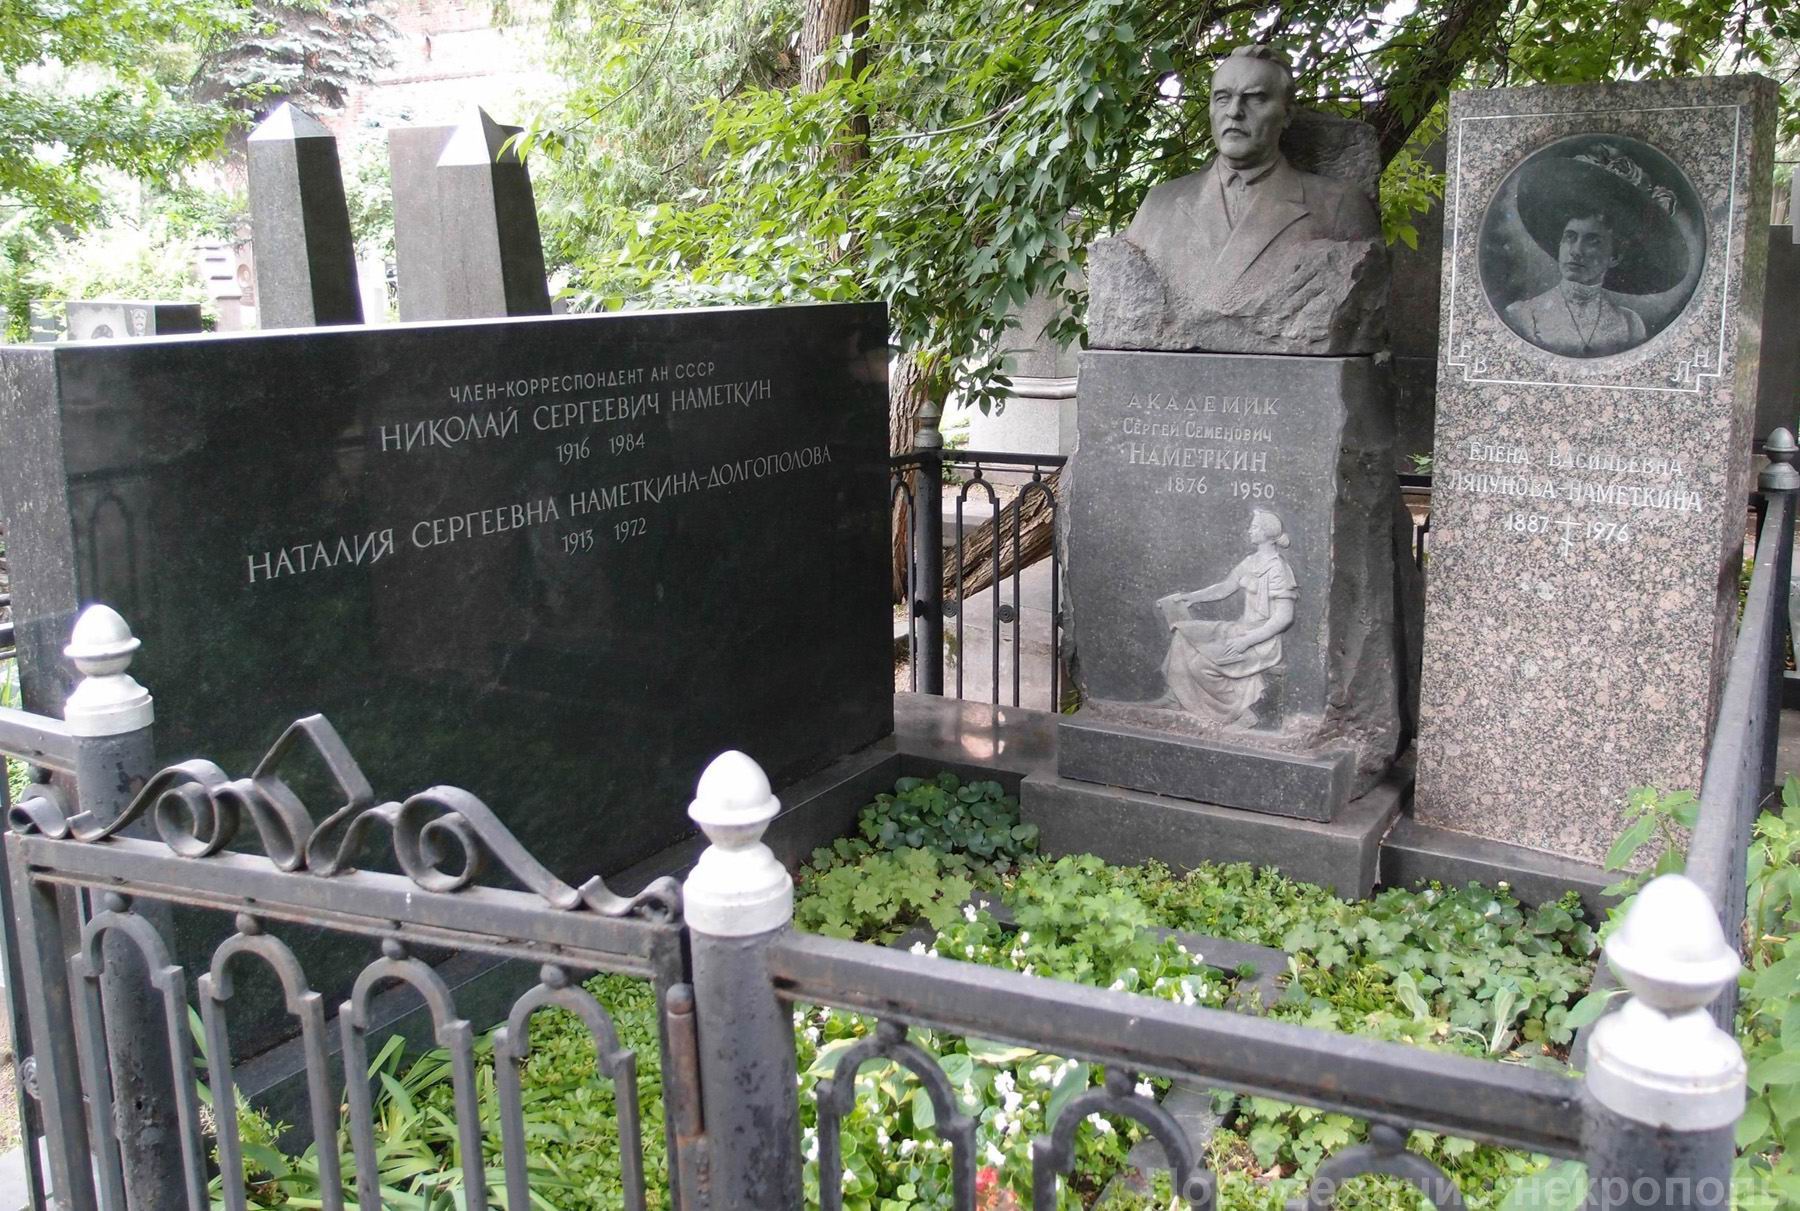 Памятник на могиле Намёткина С.С. (1876-1950), ск. Д.Шварц, и Н.С. (1916-1984), на Новодевичьем кладбище (3-59-2). Нажмите левую кнопку мыши, чтобы увидеть фрагменты памятника.